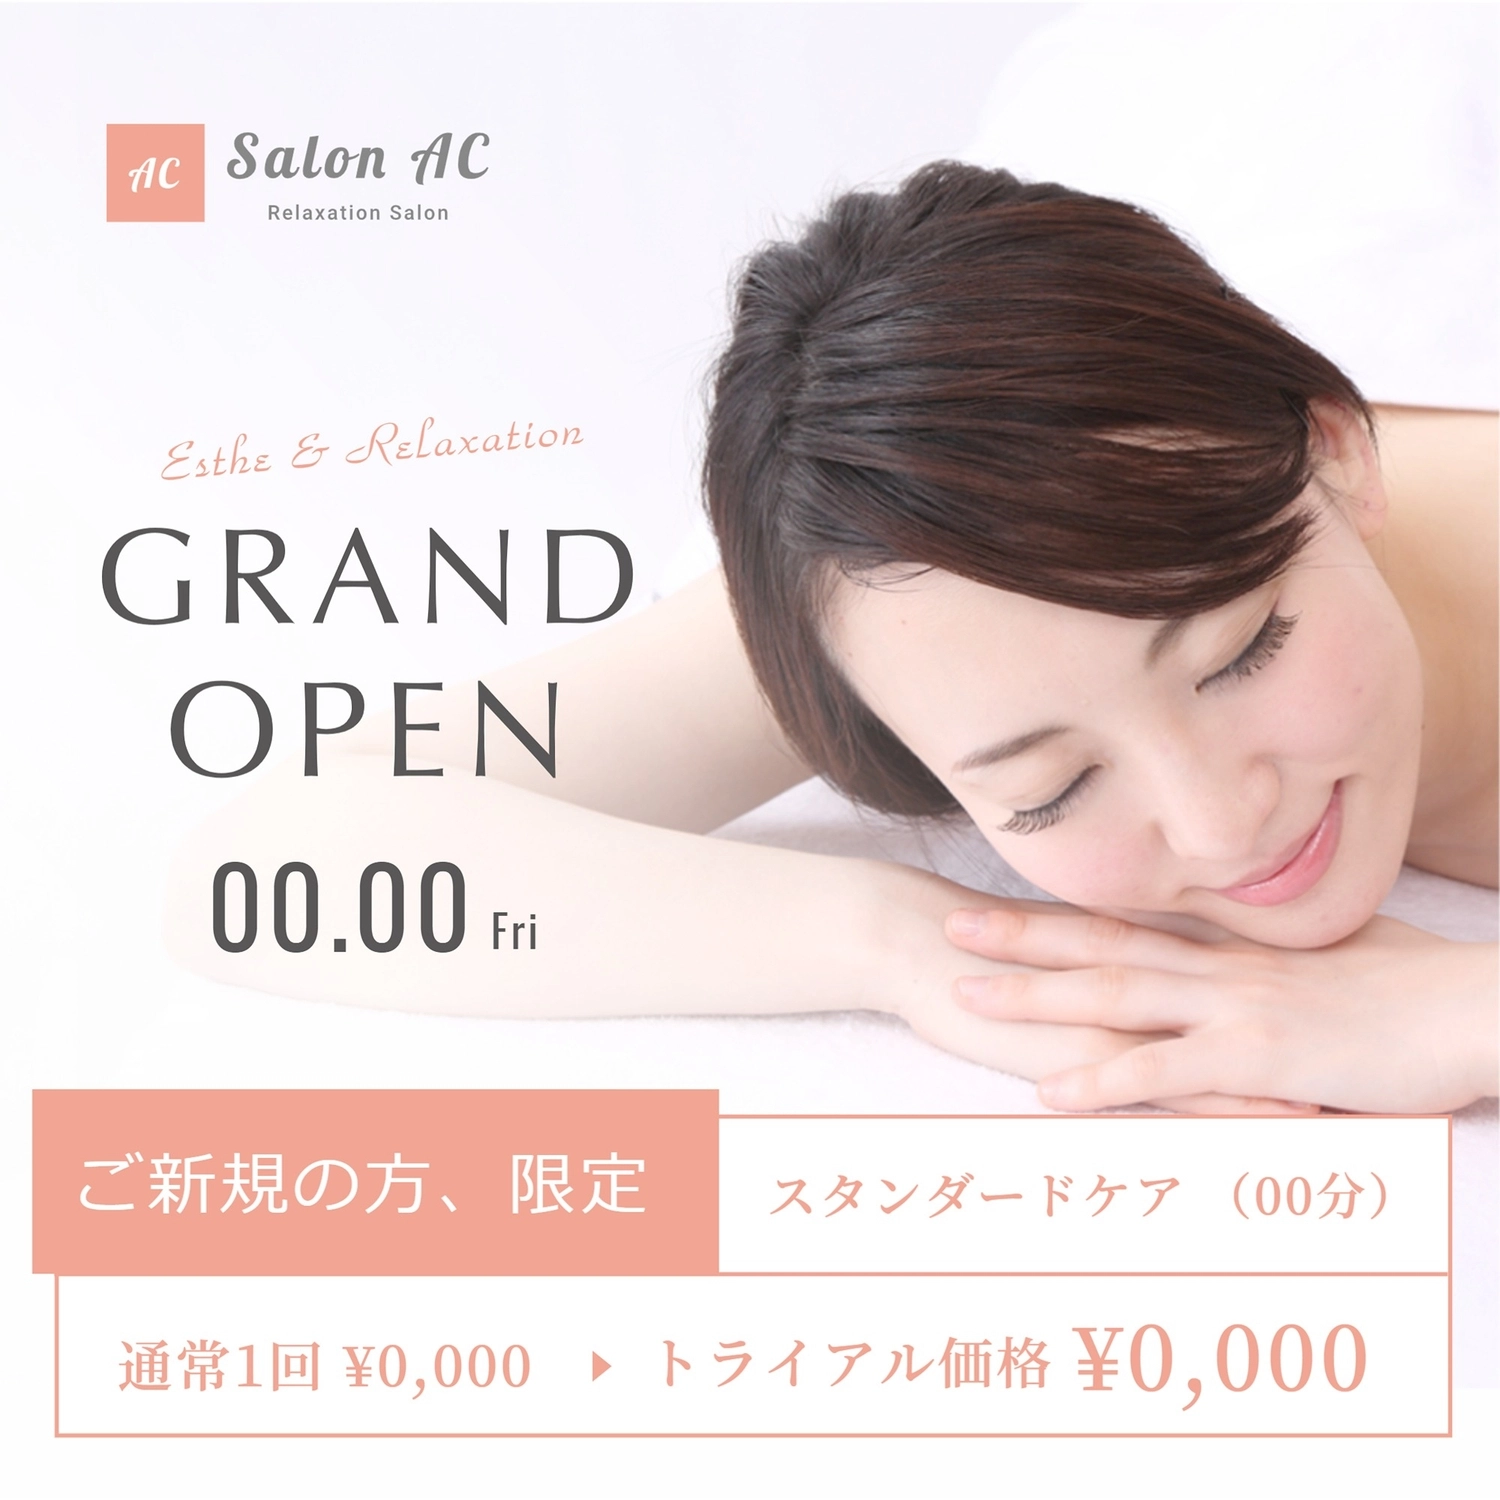 グランドオープンのサロン（日本人女性の写真）, viết ngang, loại trừ, thường xuyên, Instagram Post mẫu